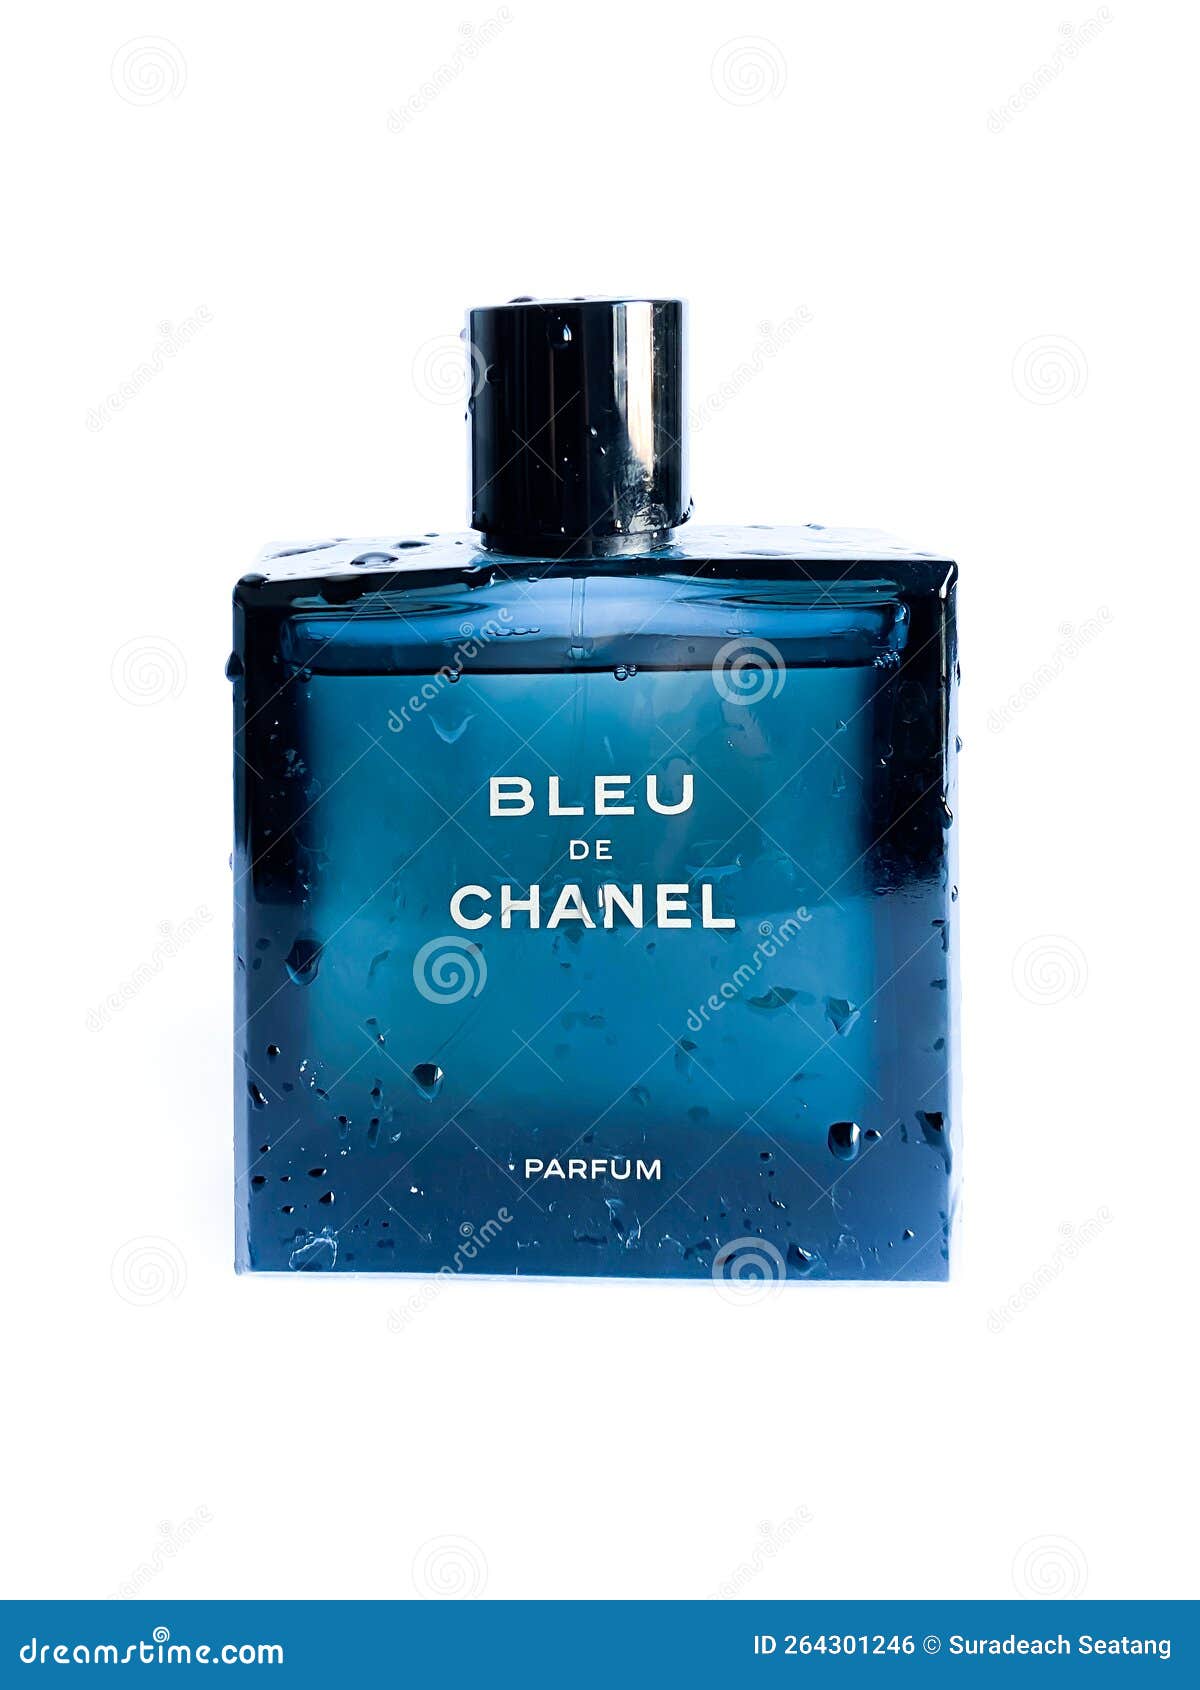 Chanel Bleu De Chanel PARFUM Pour Homme Men's Sample Spray .05oz, 1.5ml